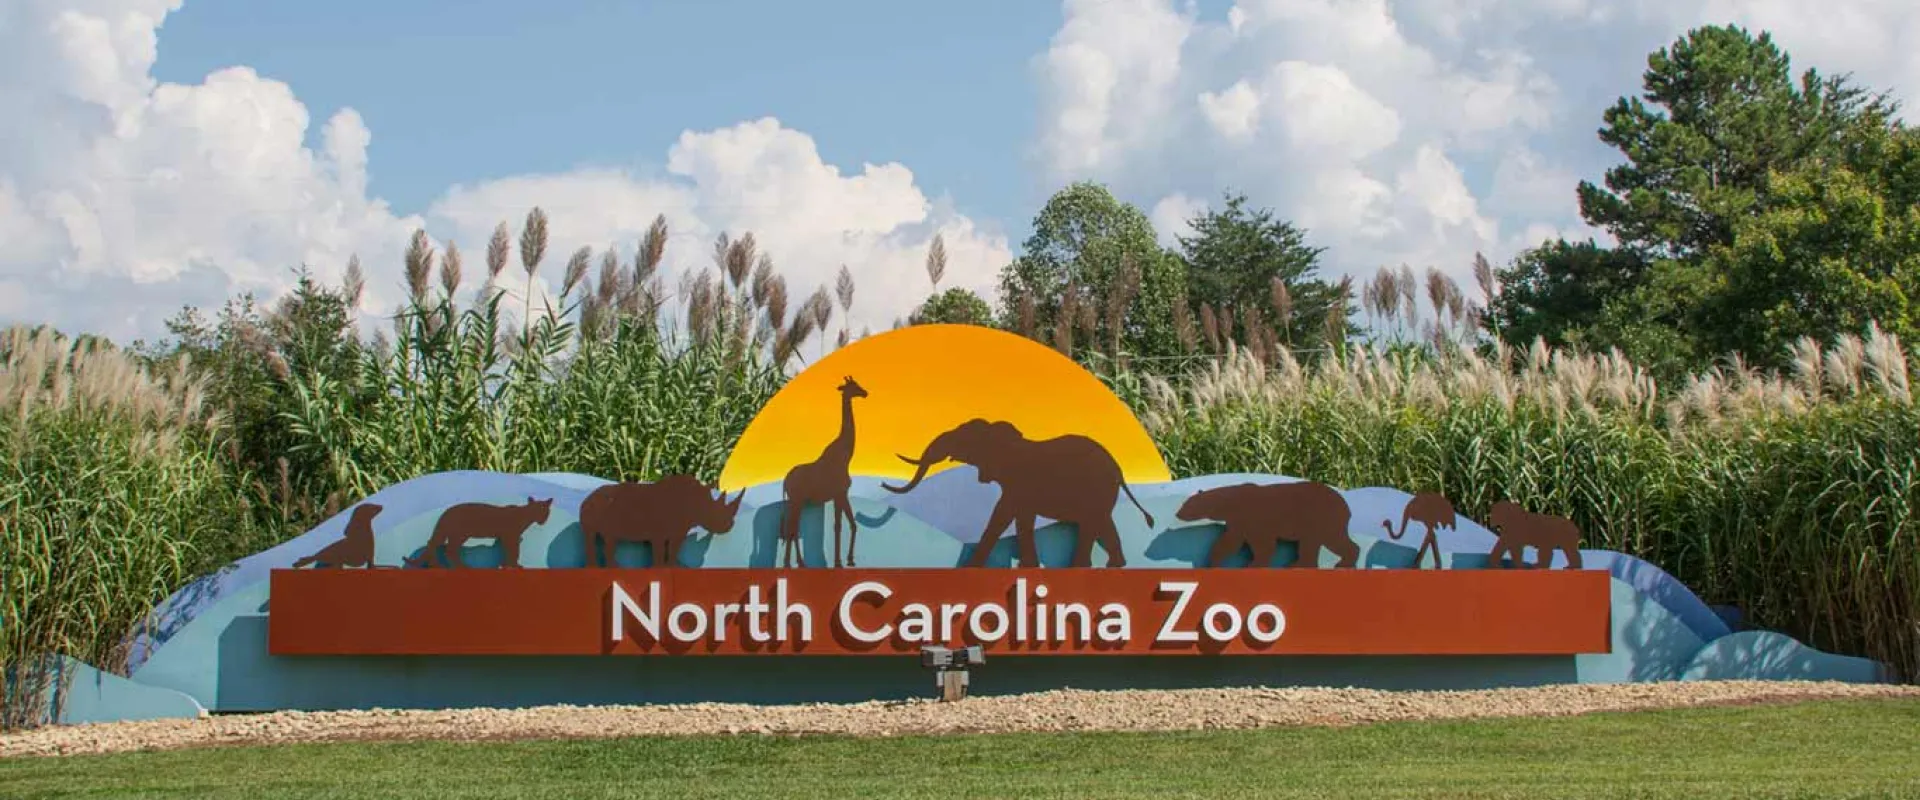 North Carolina Zoo Council Meeting May 11, 2022